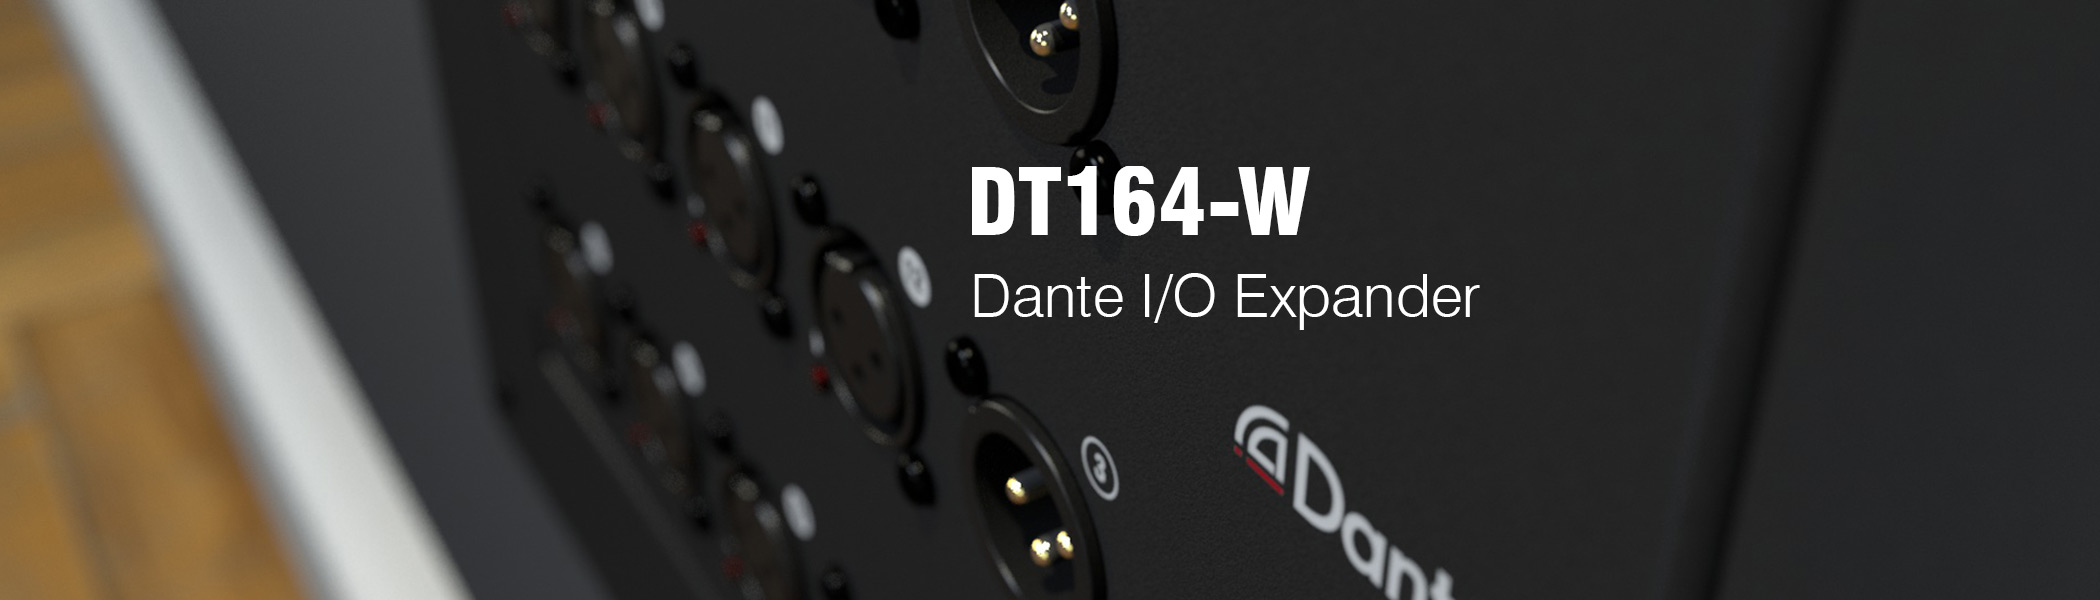 DT164-W_Header